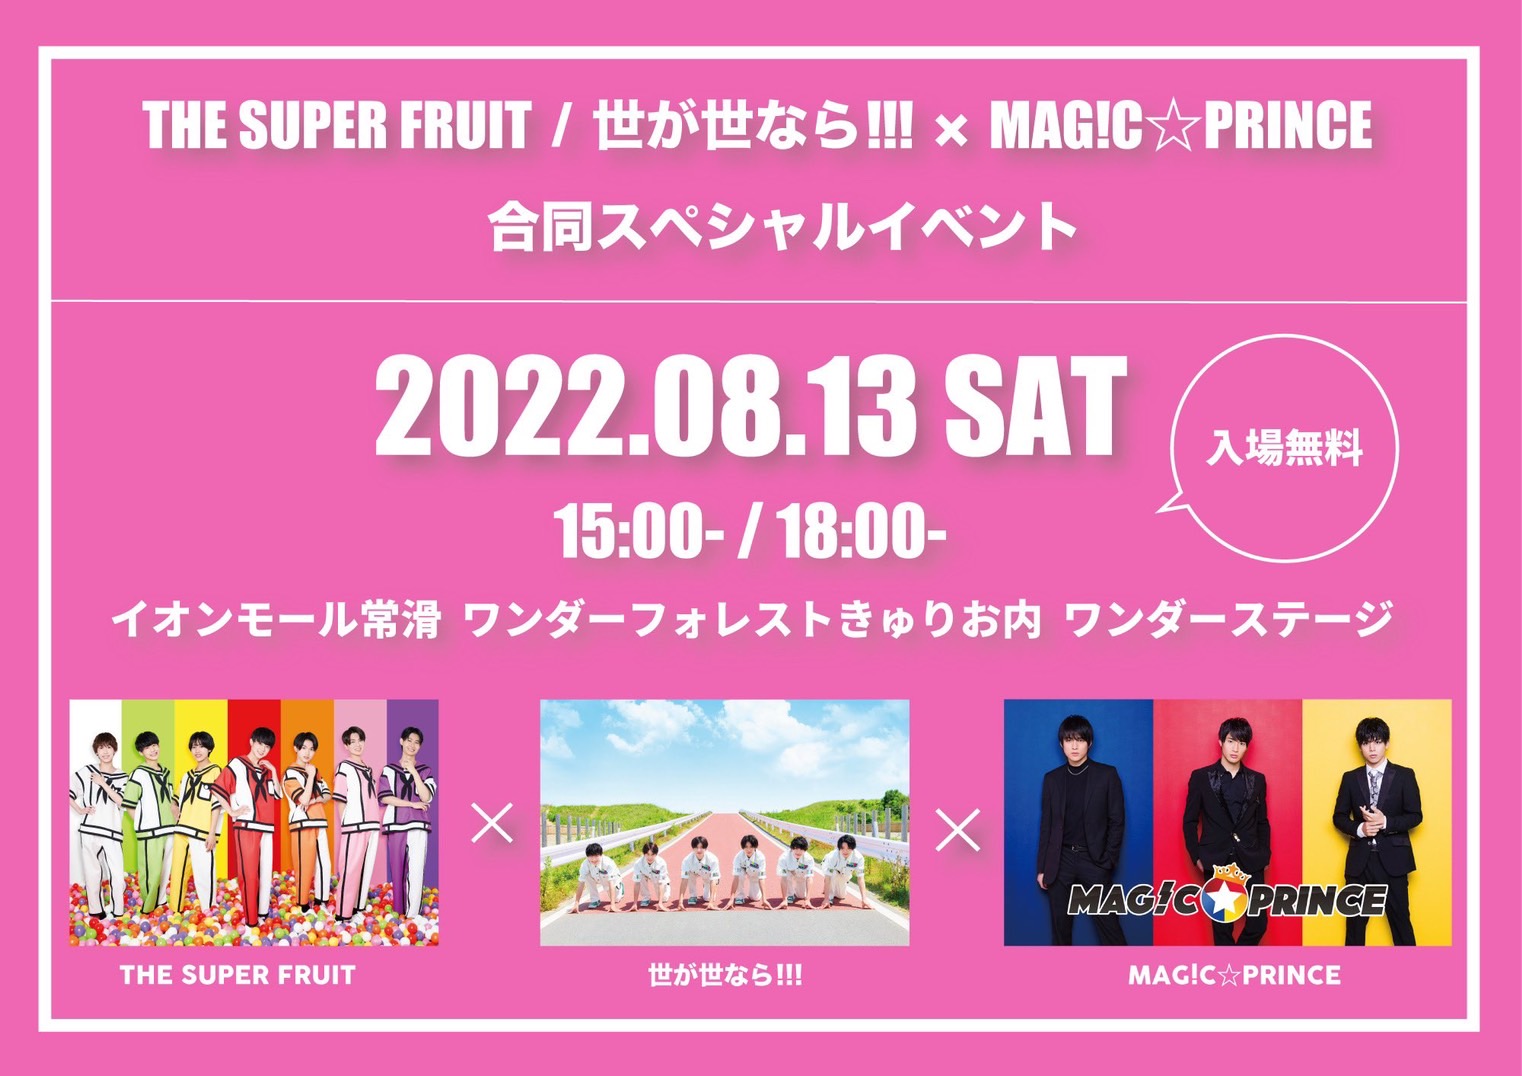 【NEWS】8月13日(土)『THE SUPER FRUIT / 世が世なら!!! × MAG!C⭐︎PRINCE』合同スペシャルイベント 開催内容に関するお知らせ